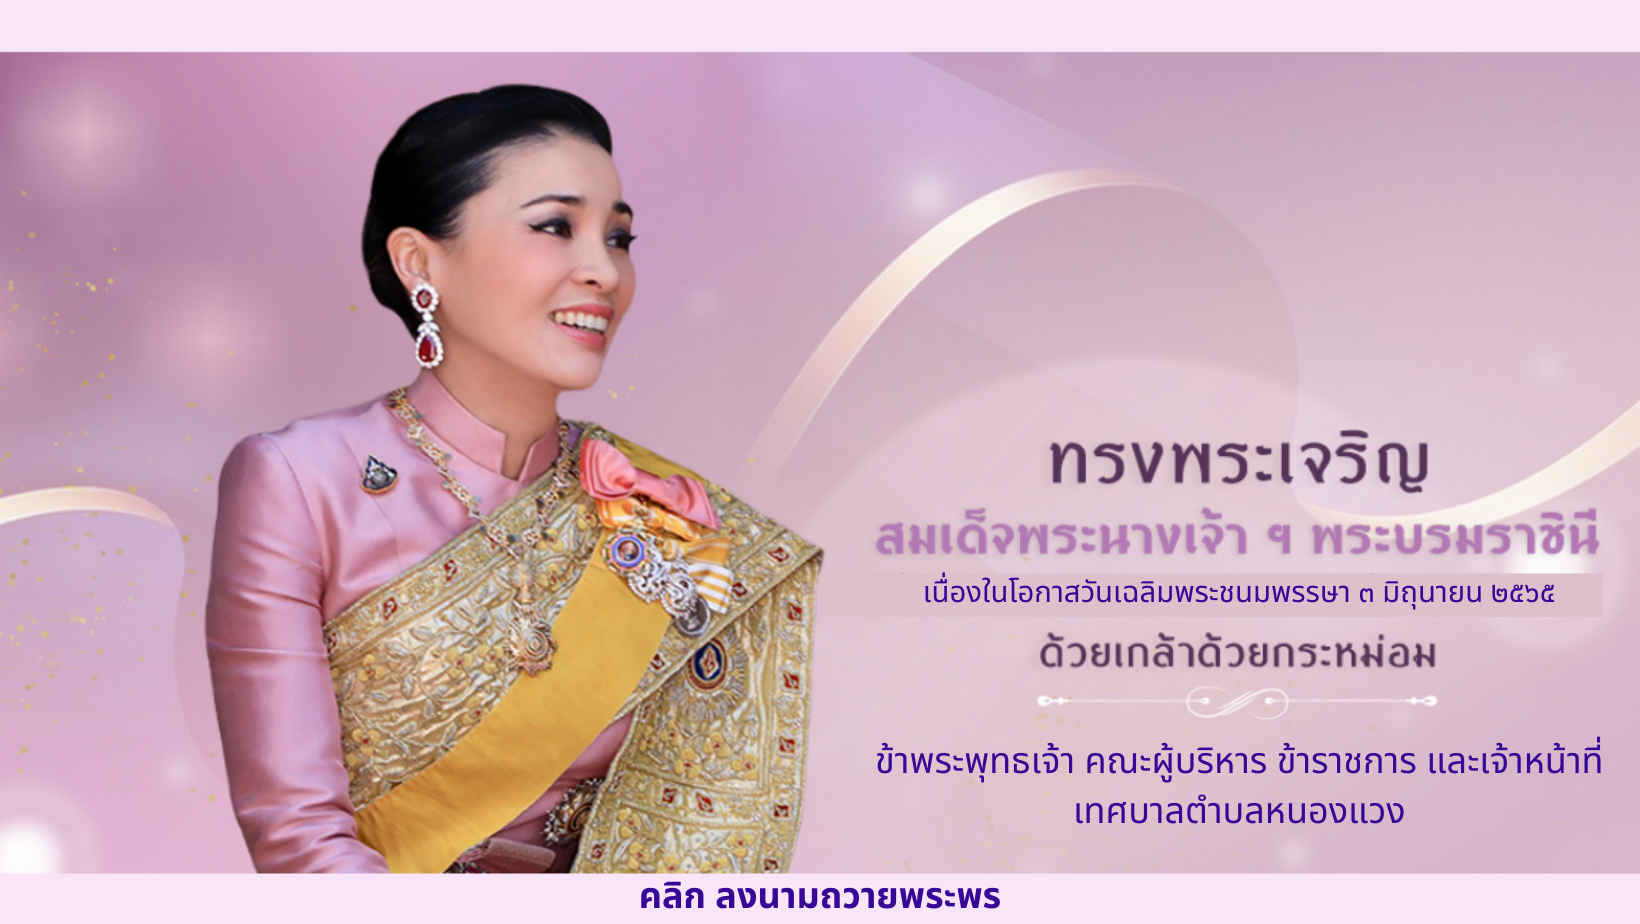 ขอเชิญประชาชนชาวไทย ร่วมลงนามถวายพระพร เนื่องในโอกาสวันเฉลิมพระชนมพรรษา สมเด็จพระนางเจ้าฯ พระบรมราชินี วันที่ ๓ มิถุนายน ๒๕๖๕ ตลอดเดือนมิถุนายน